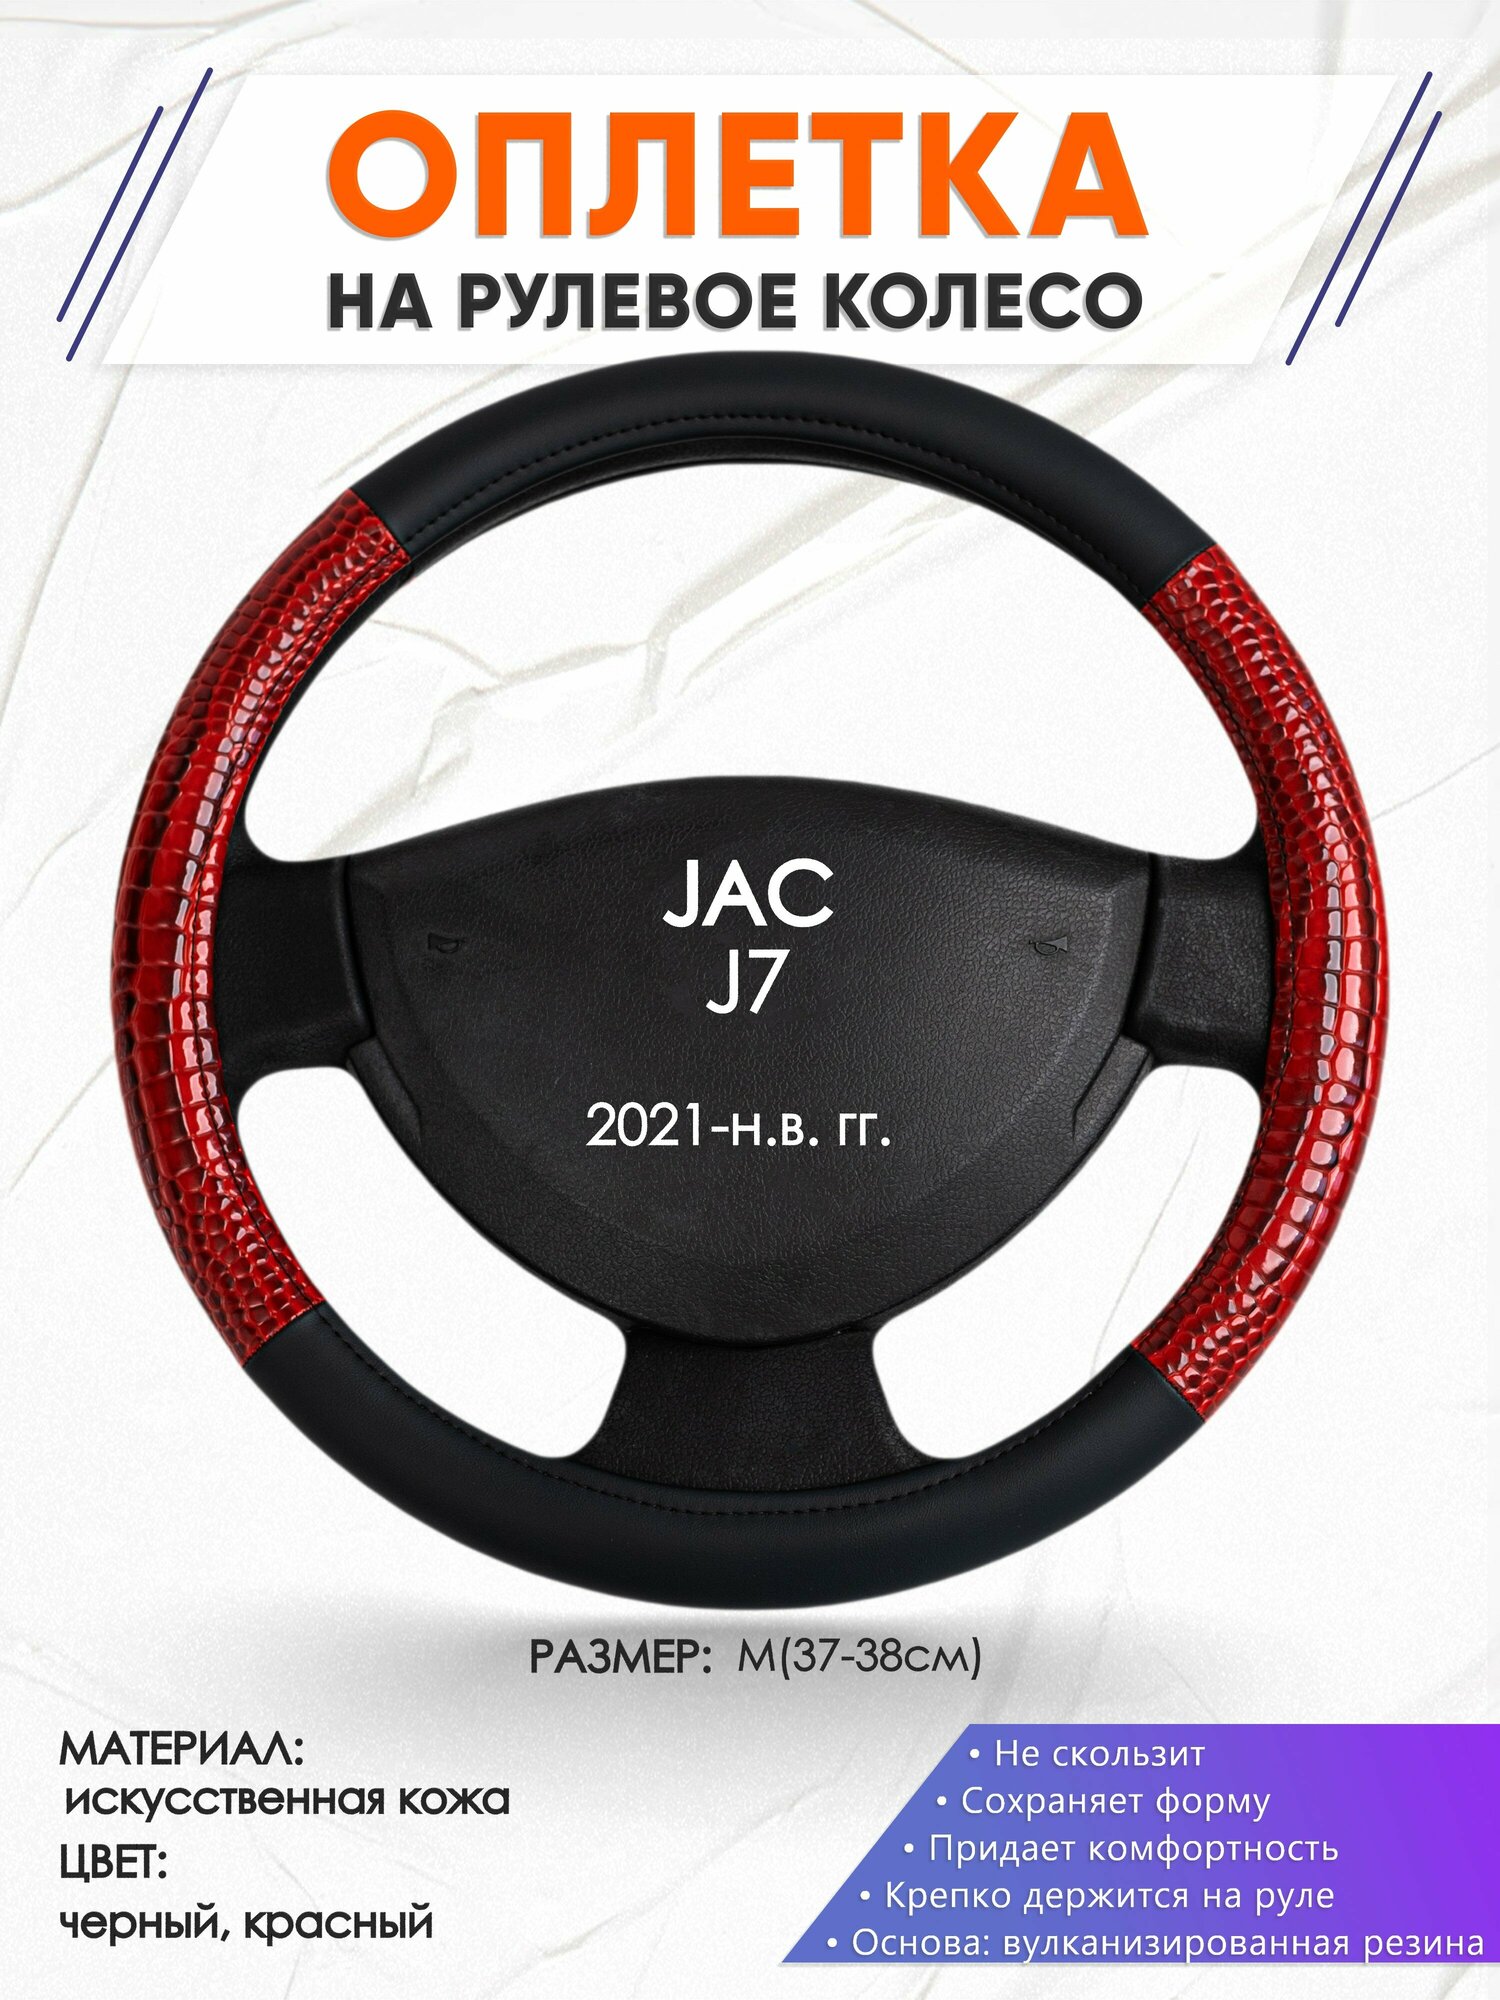 Оплетка наруль для JAC J7(Джак Джи 7) 2021-н. в. годов выпуска, размер M(37-38см), Искусственная кожа 16